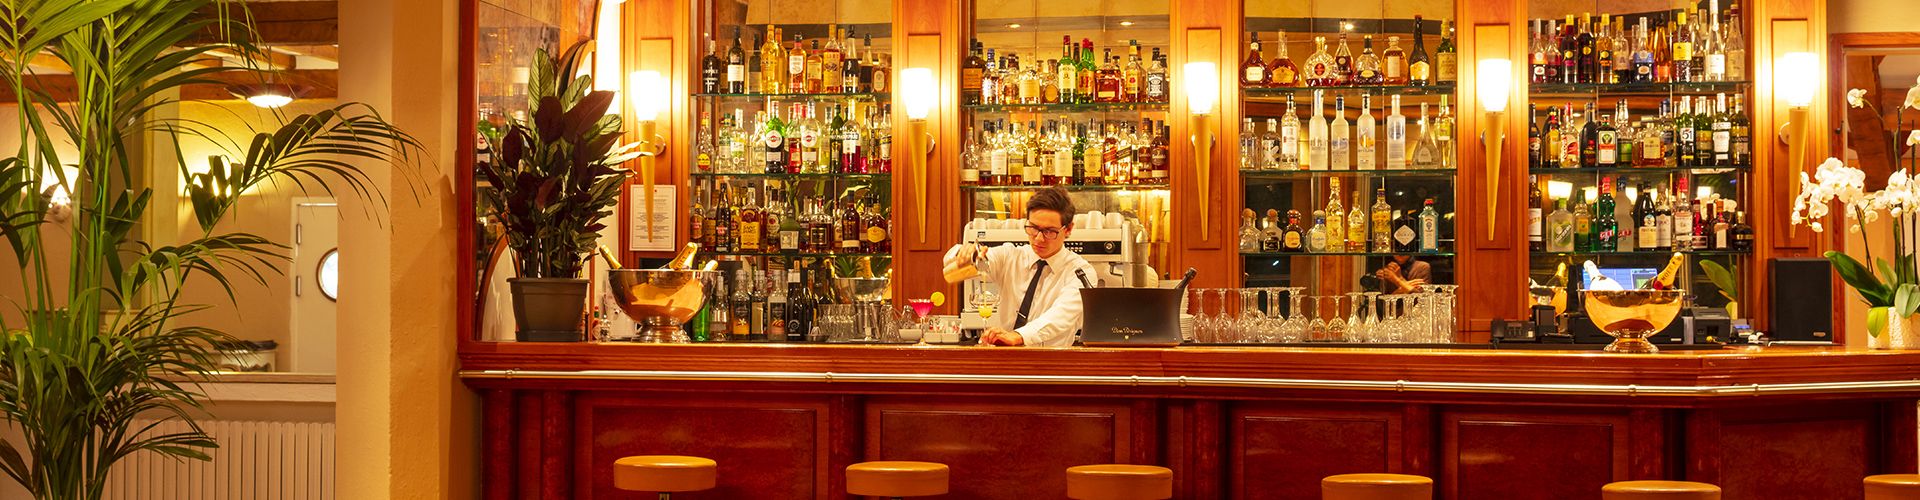 barman en train de préparer un cocktail au bar de l'hôtel-restaurant la mandarine